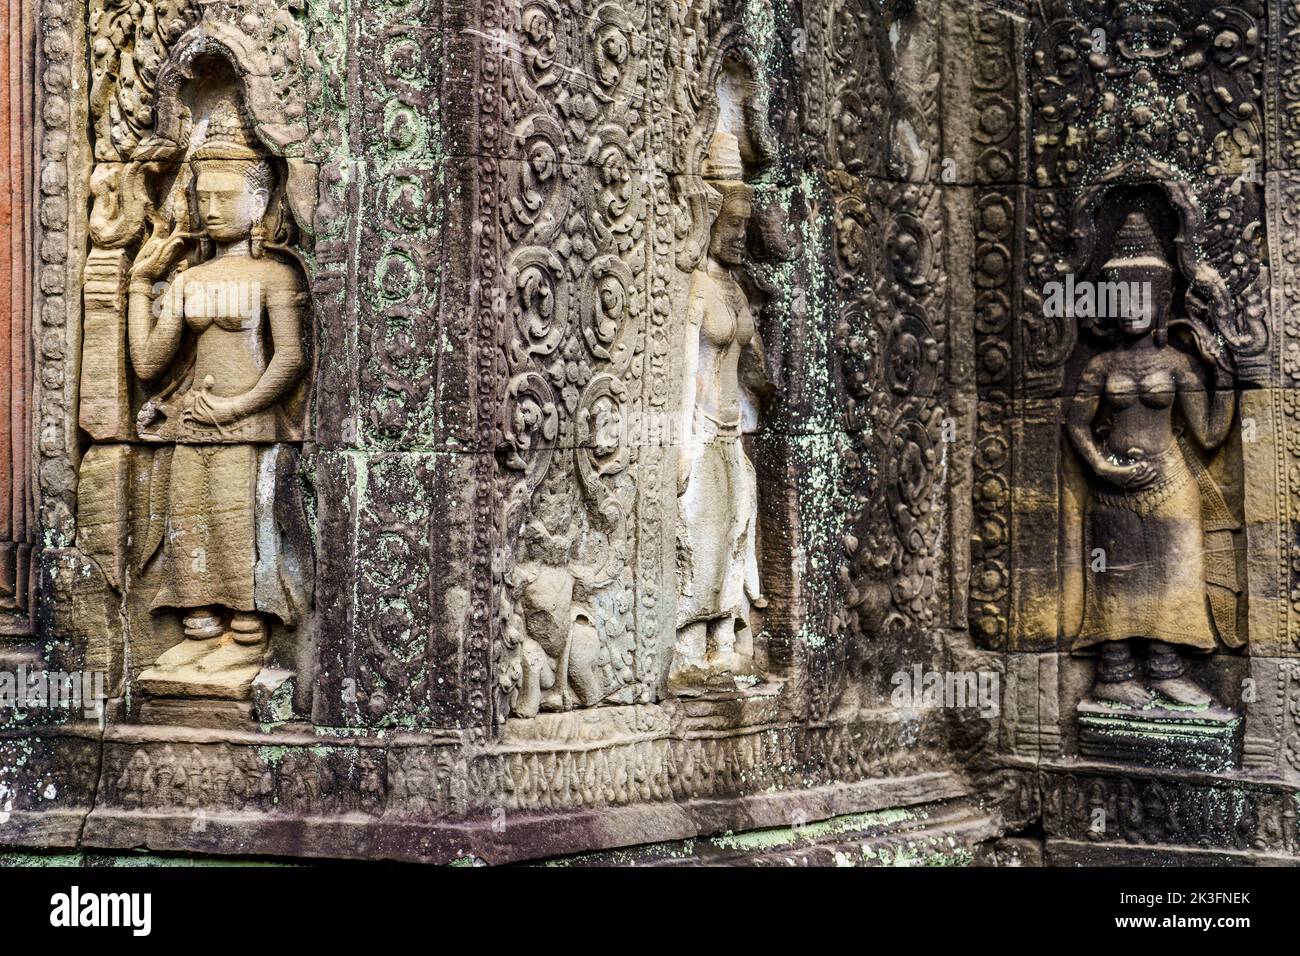 Camboya. Siem Riep. El parque arqueológico de Angkor. Una escultura en bajorrelieve de Devata en Preah Khan siglo 12th templo hindú Foto de stock